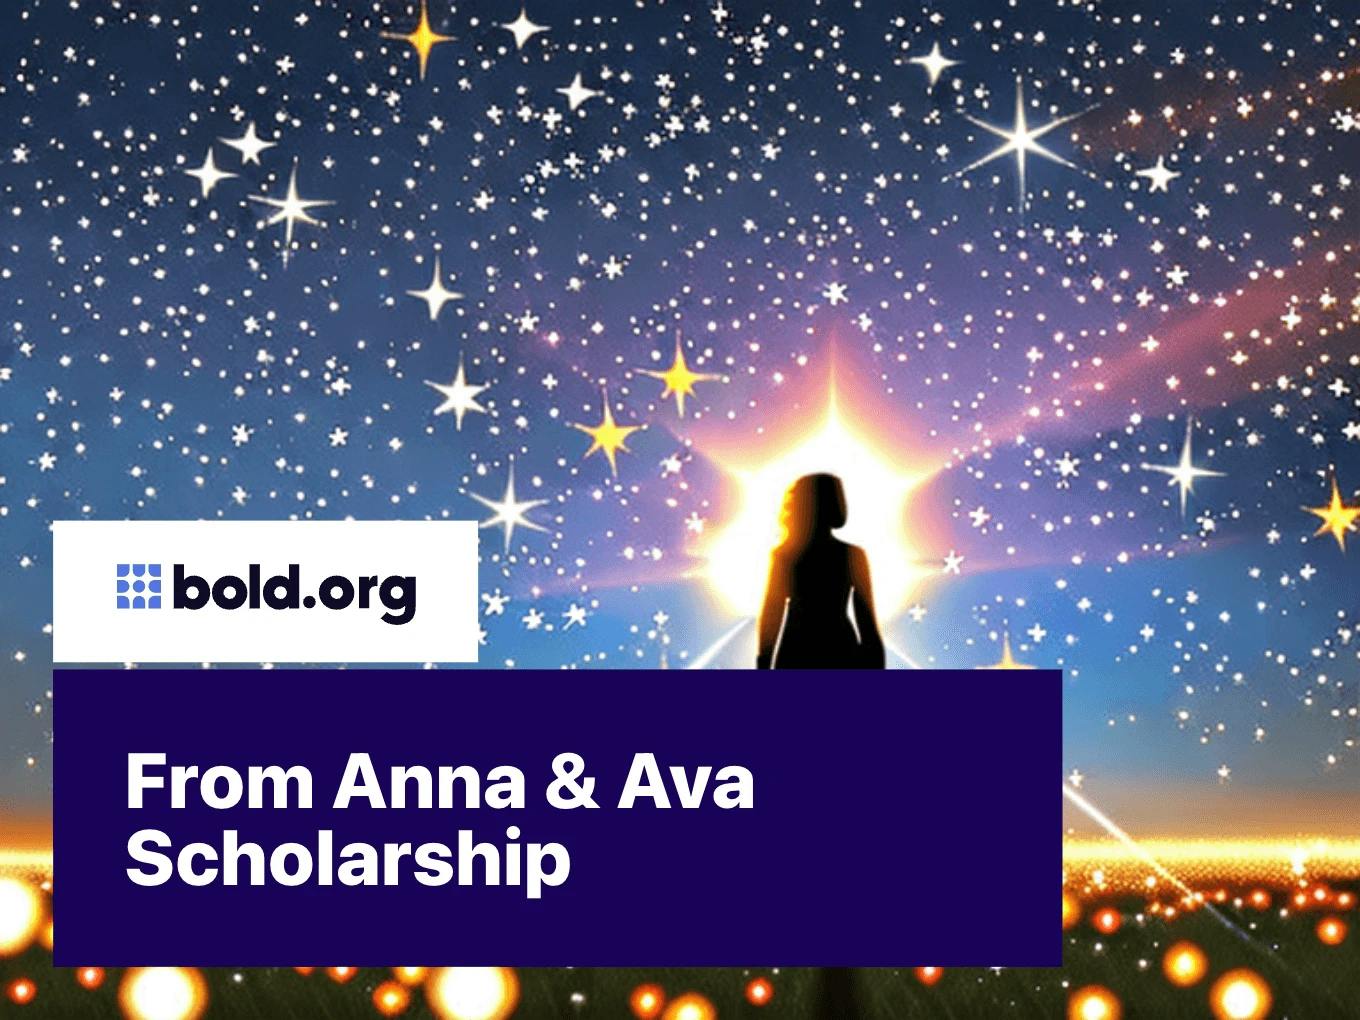 From Anna & Ava Scholarship